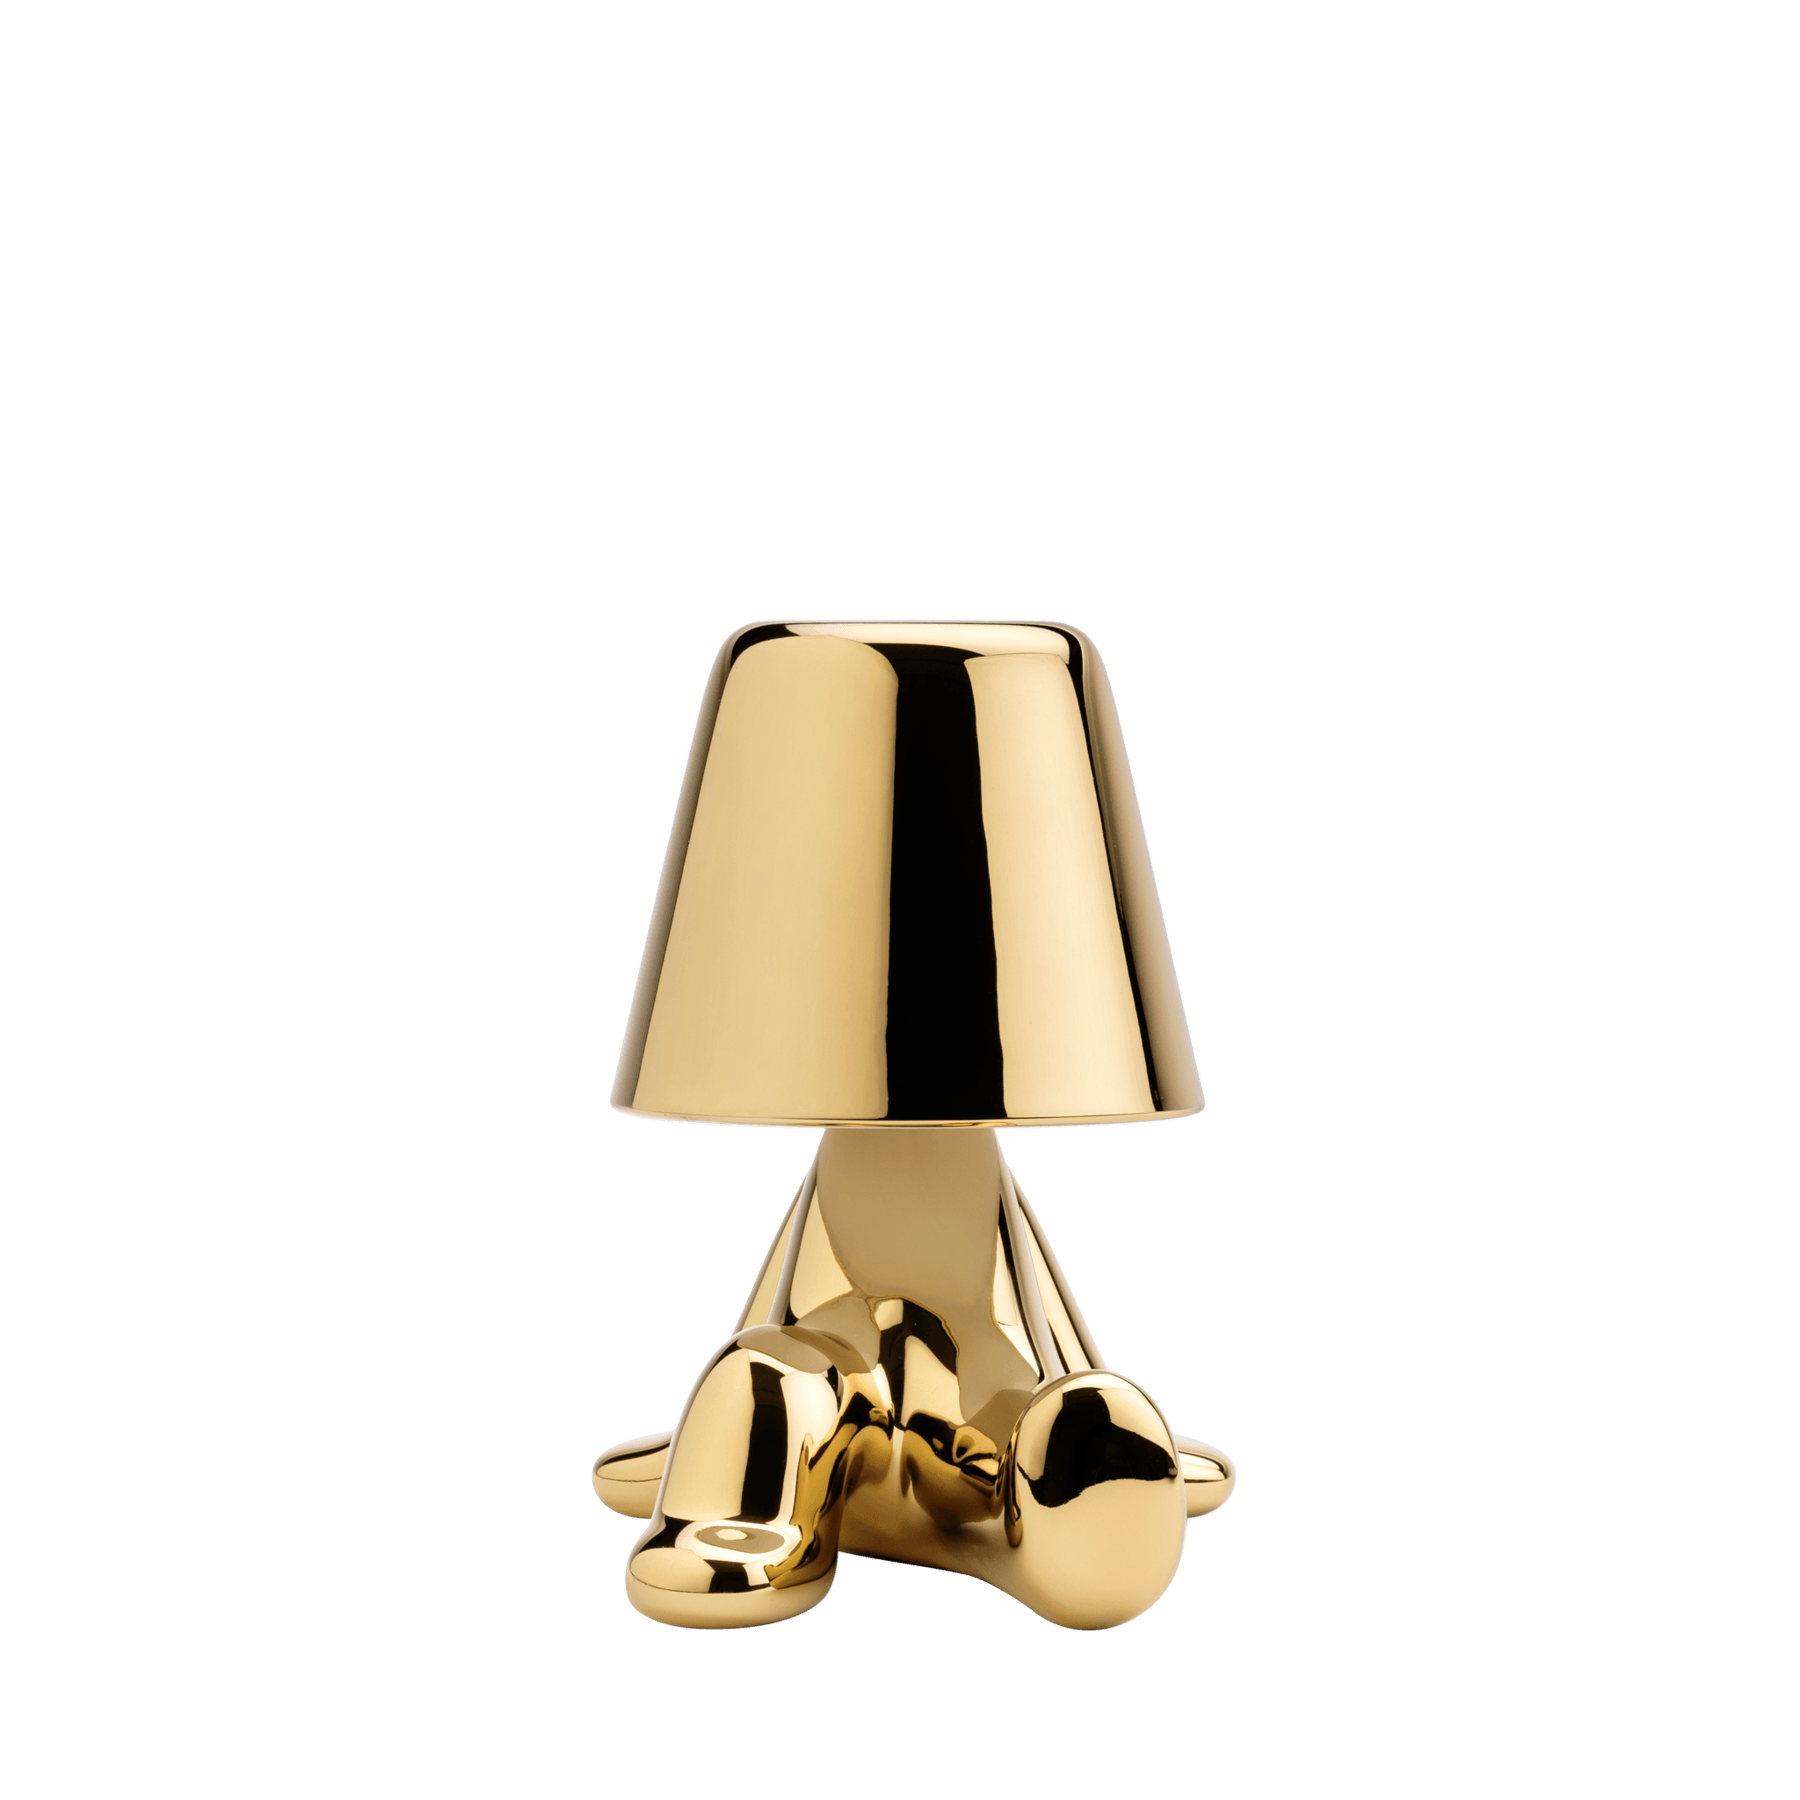 Lampa Golden Brothers / Bob - Qeeboo - PARIS14A.RO